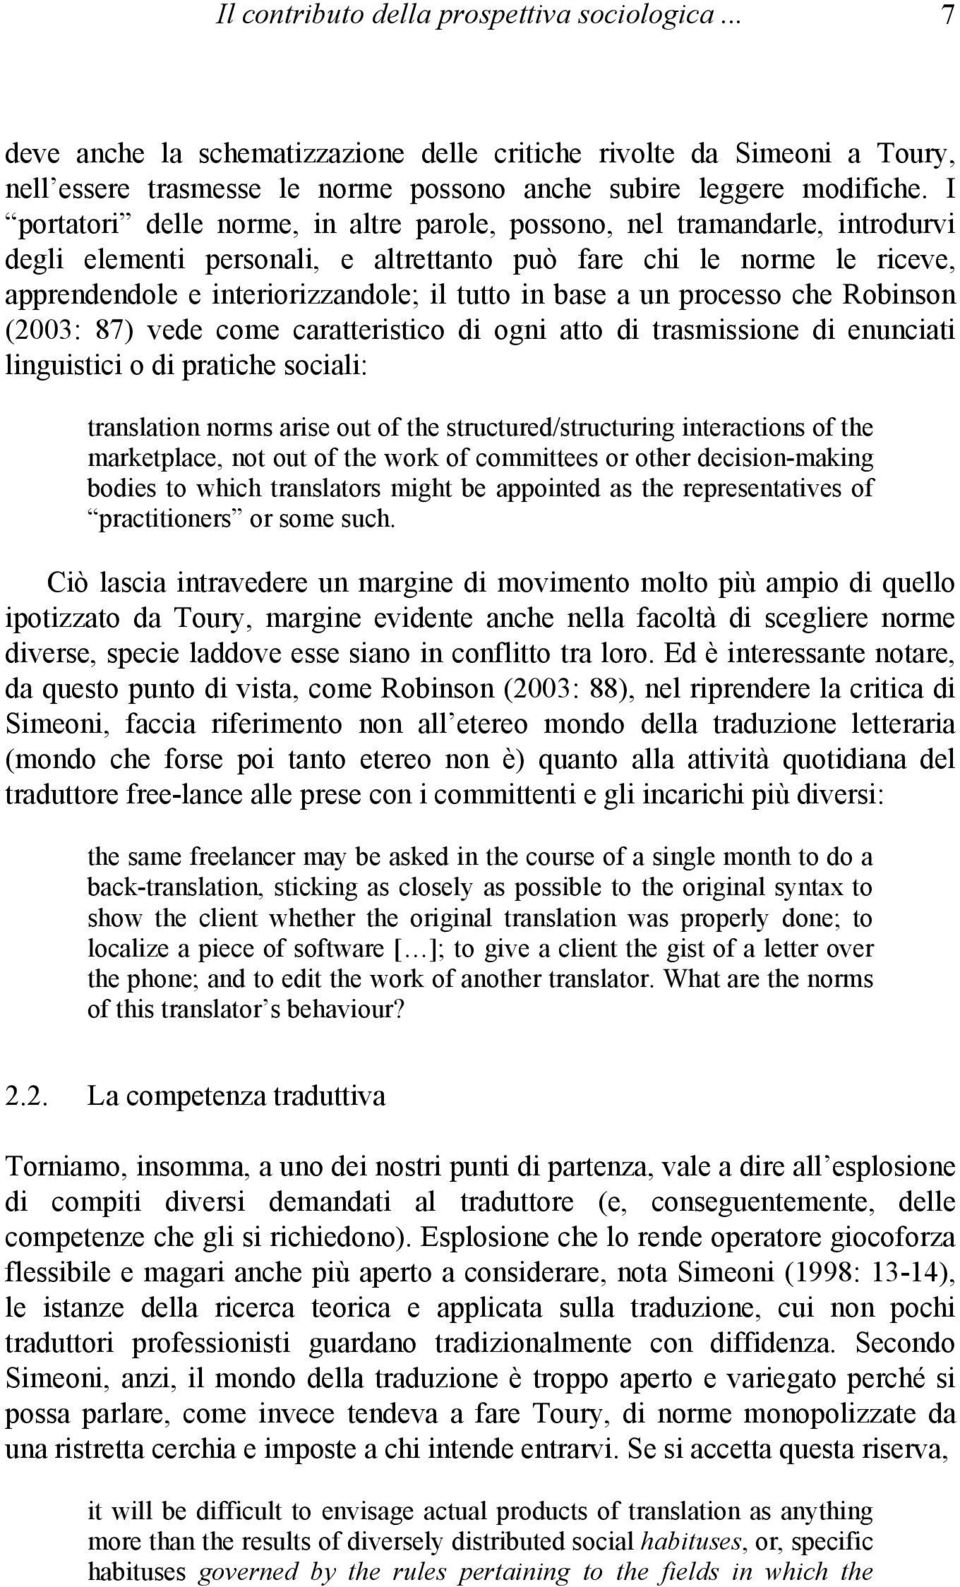 base a un processo che Robinson (2003: 87) vede come caratteristico di ogni atto di trasmissione di enunciati linguistici o di pratiche sociali: translation norms arise out of the